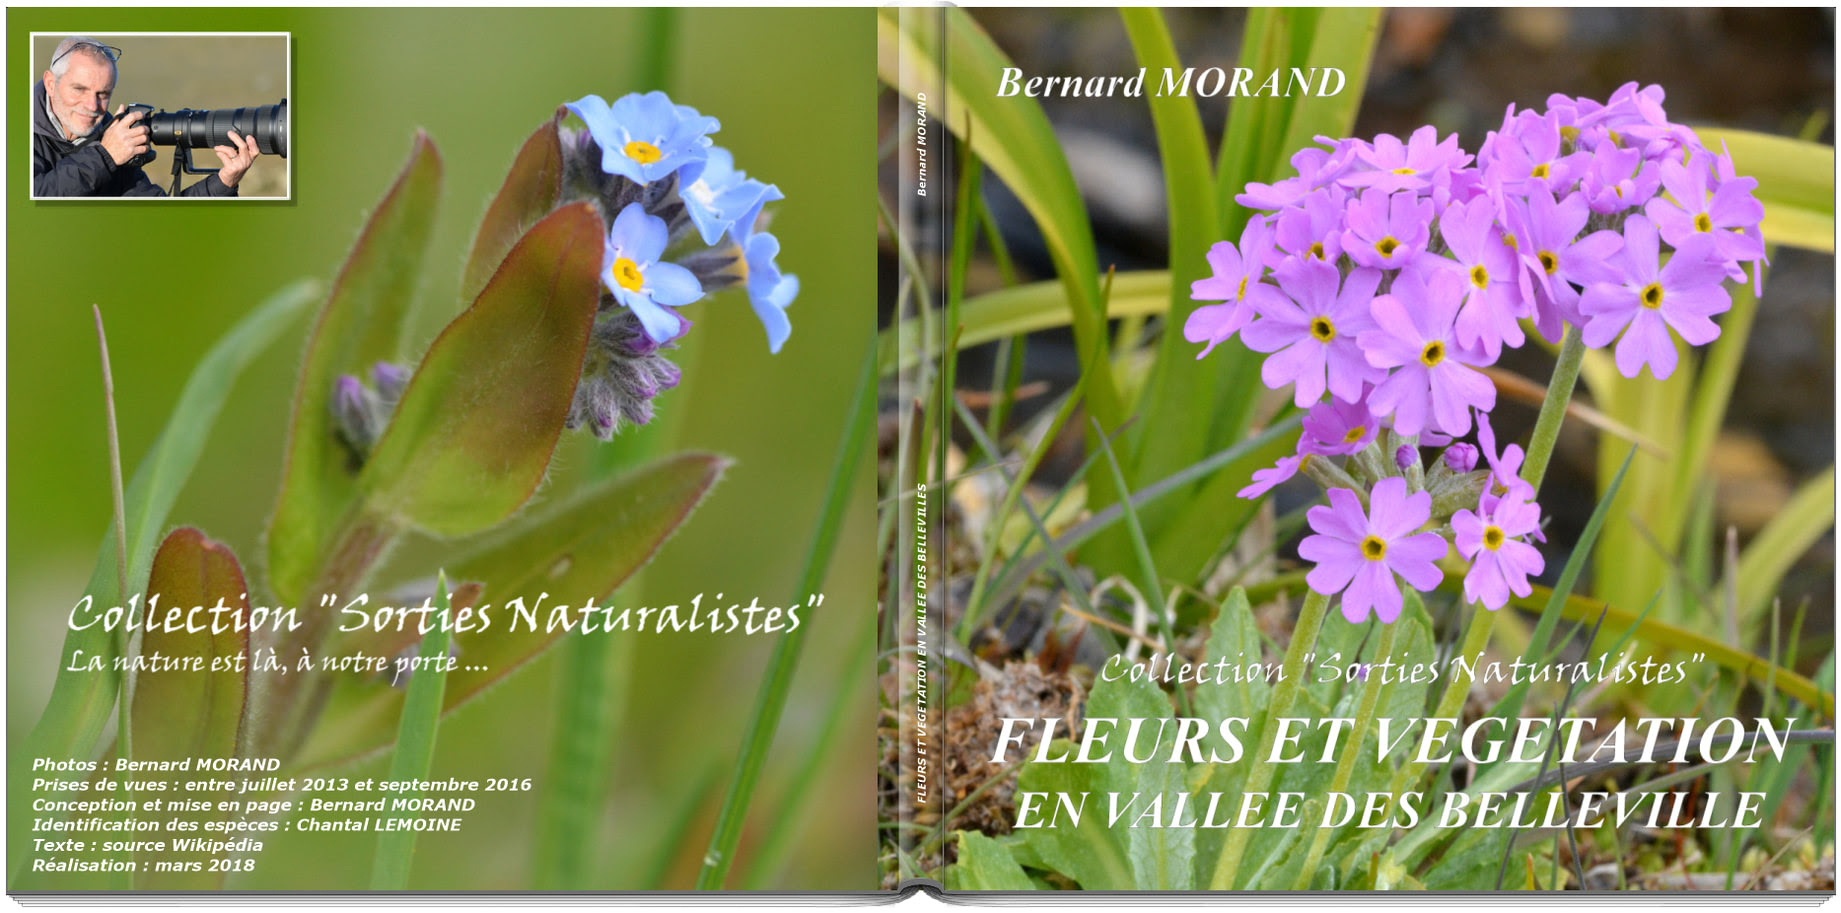 fleurs-et-vegetation-en-vallee-des-belleville